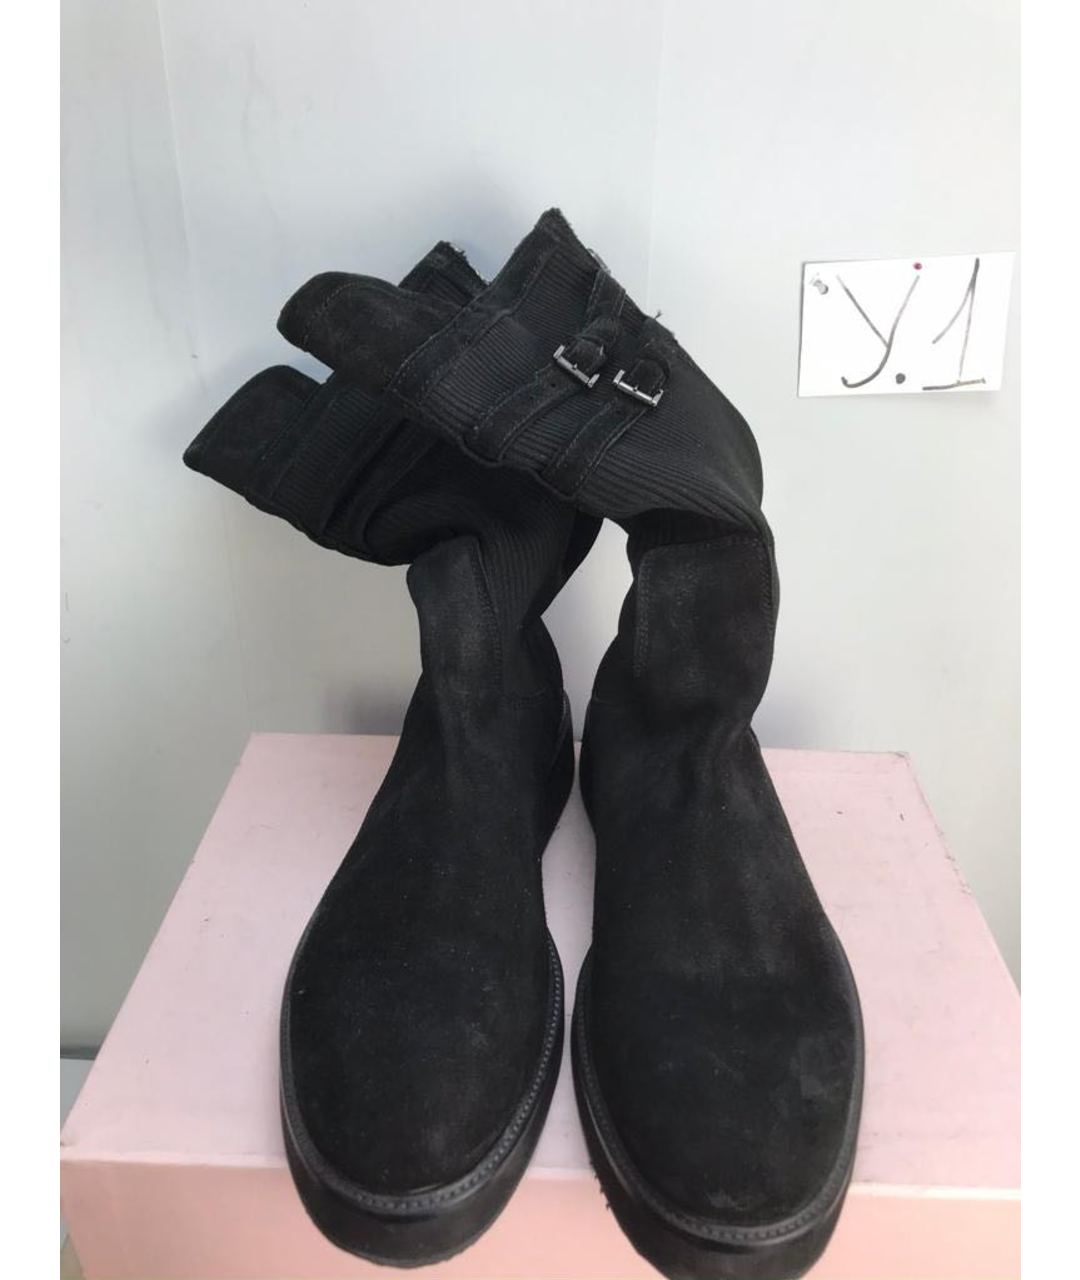 Les Hommes Черные замшевые высокие ботинки, фото 2